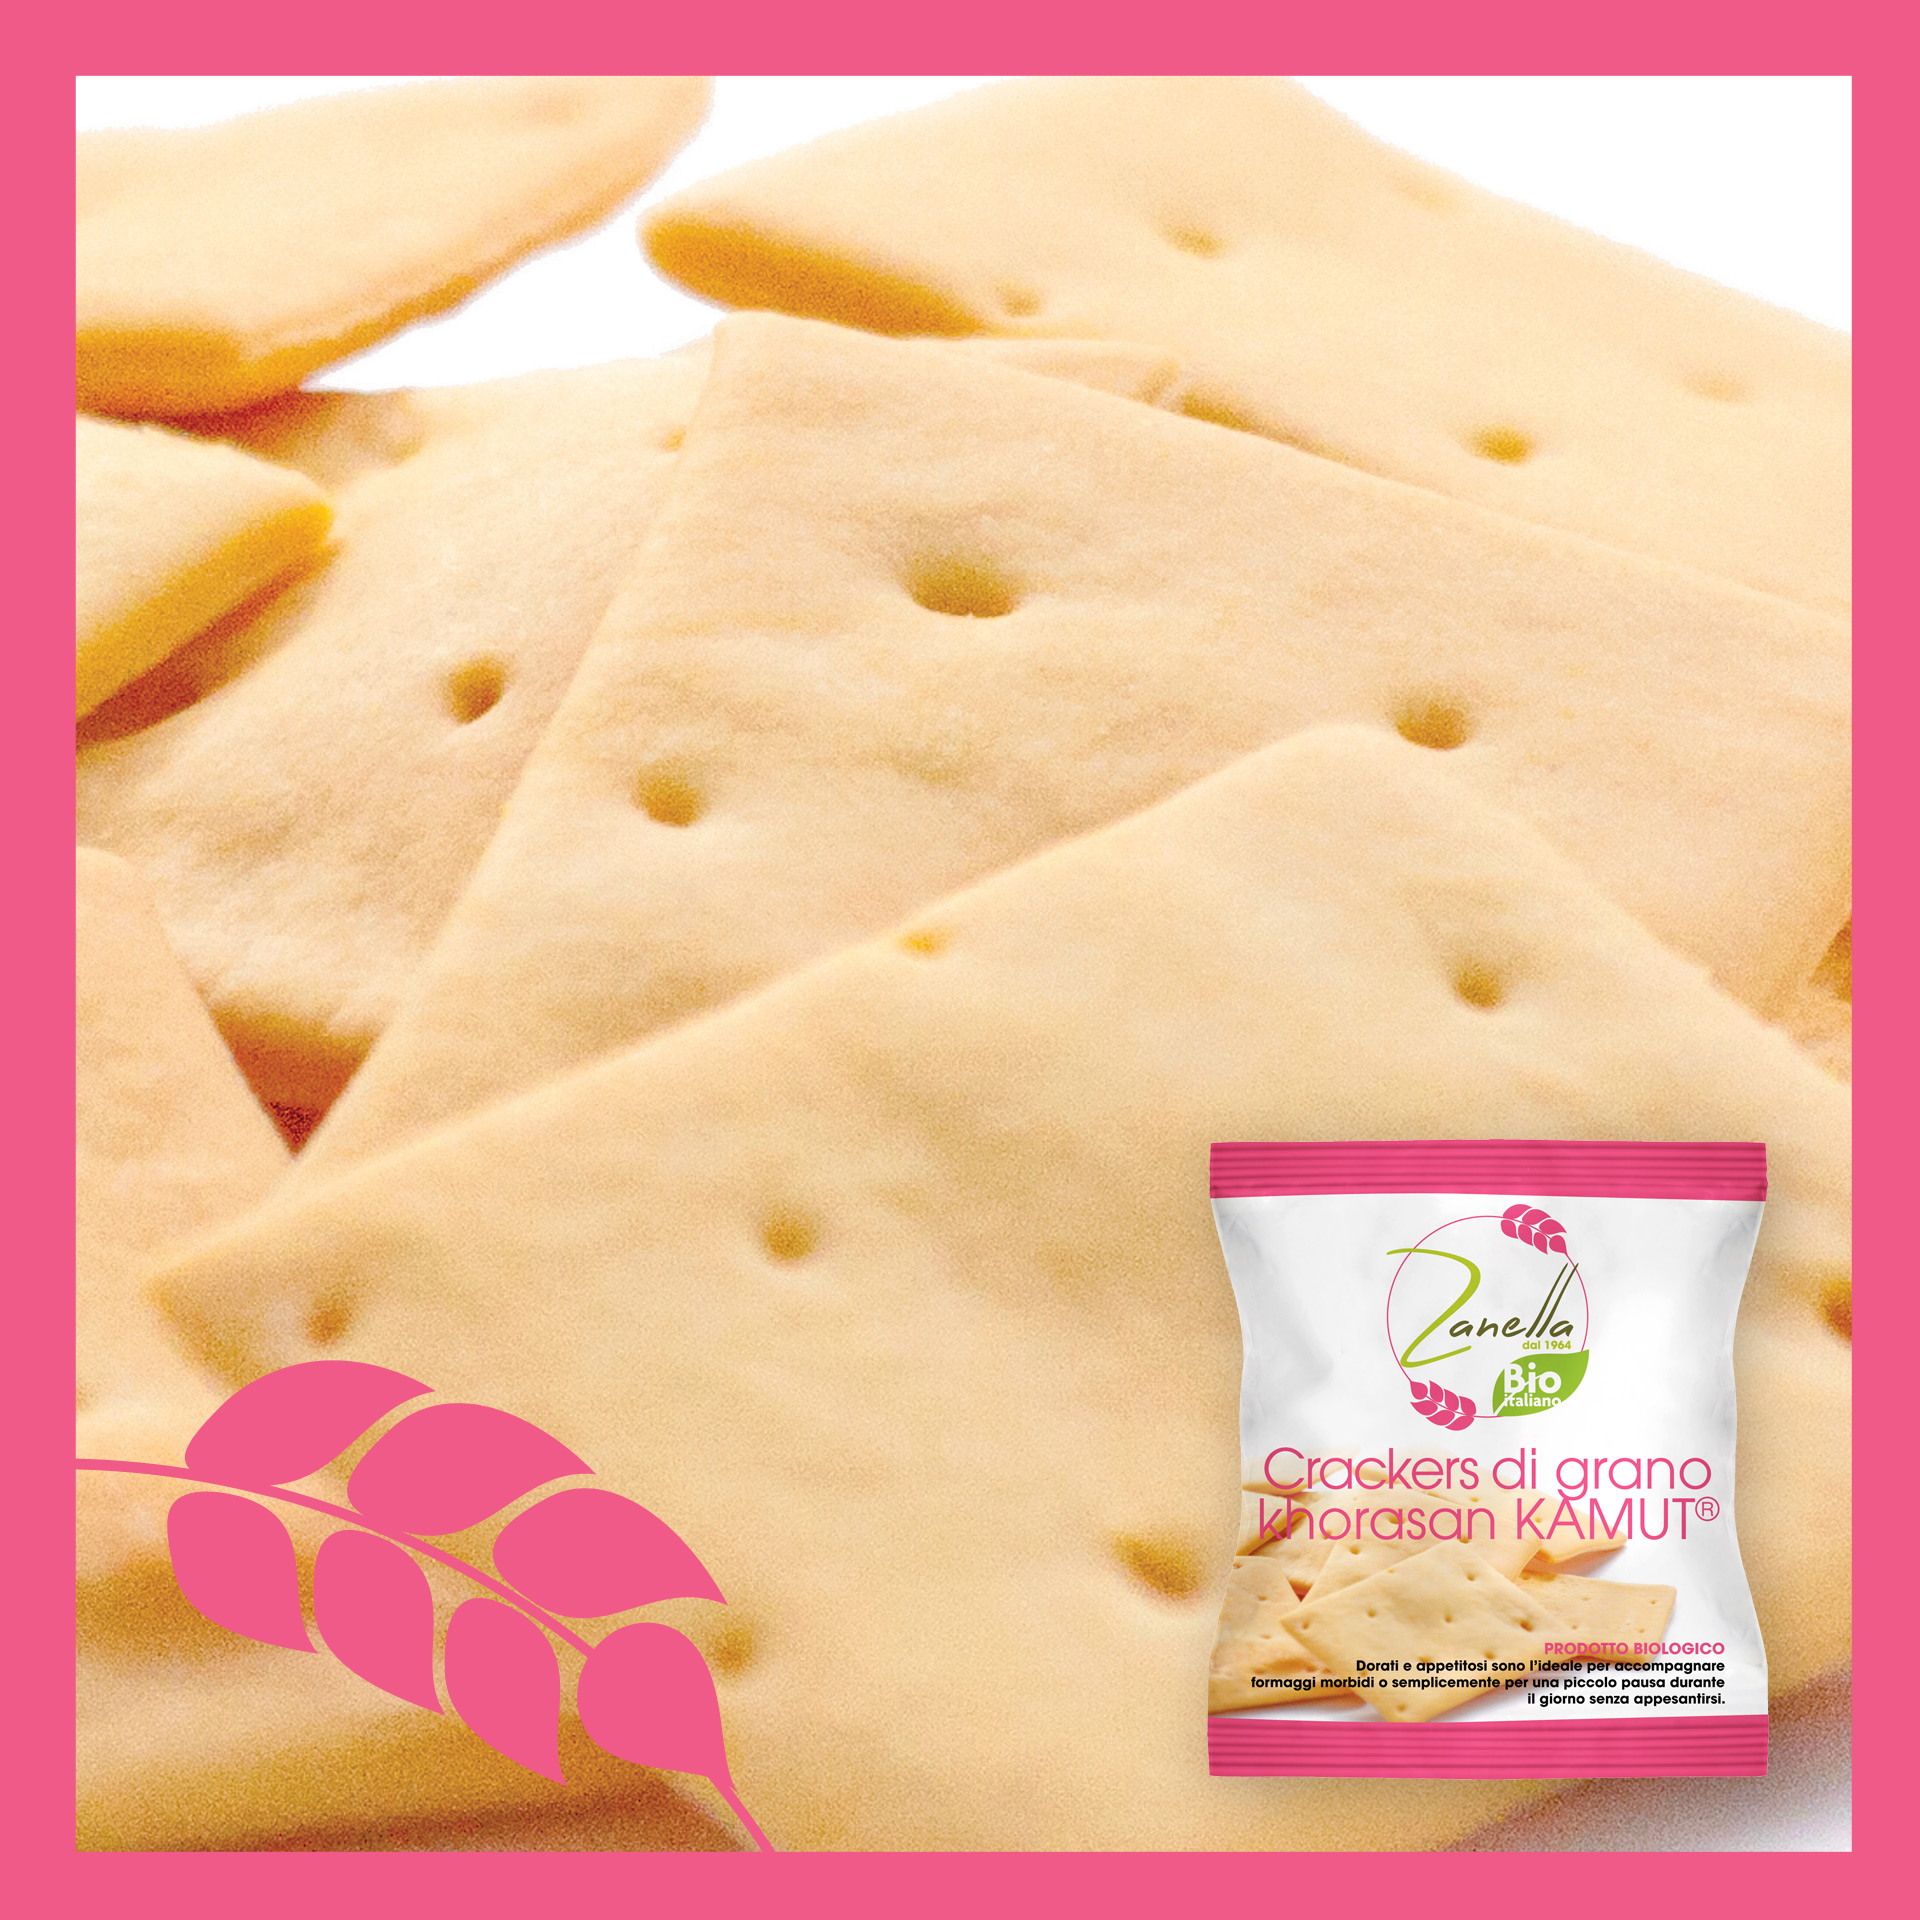 Crackers di grano khorasan Kamut®